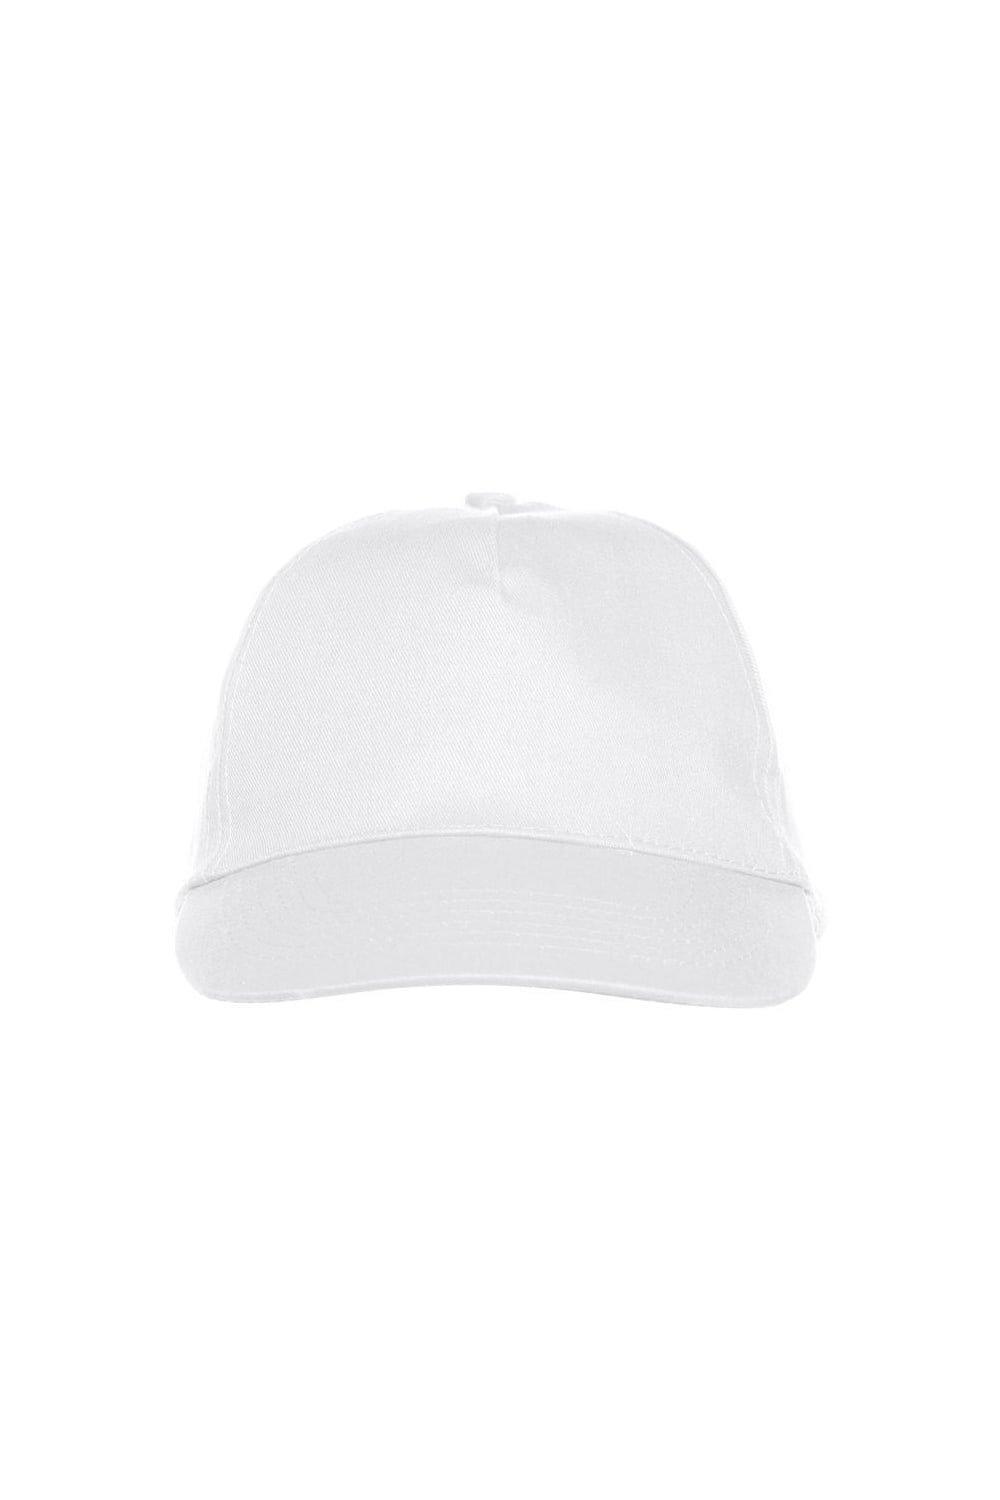 Техасская кепка Clique, белый